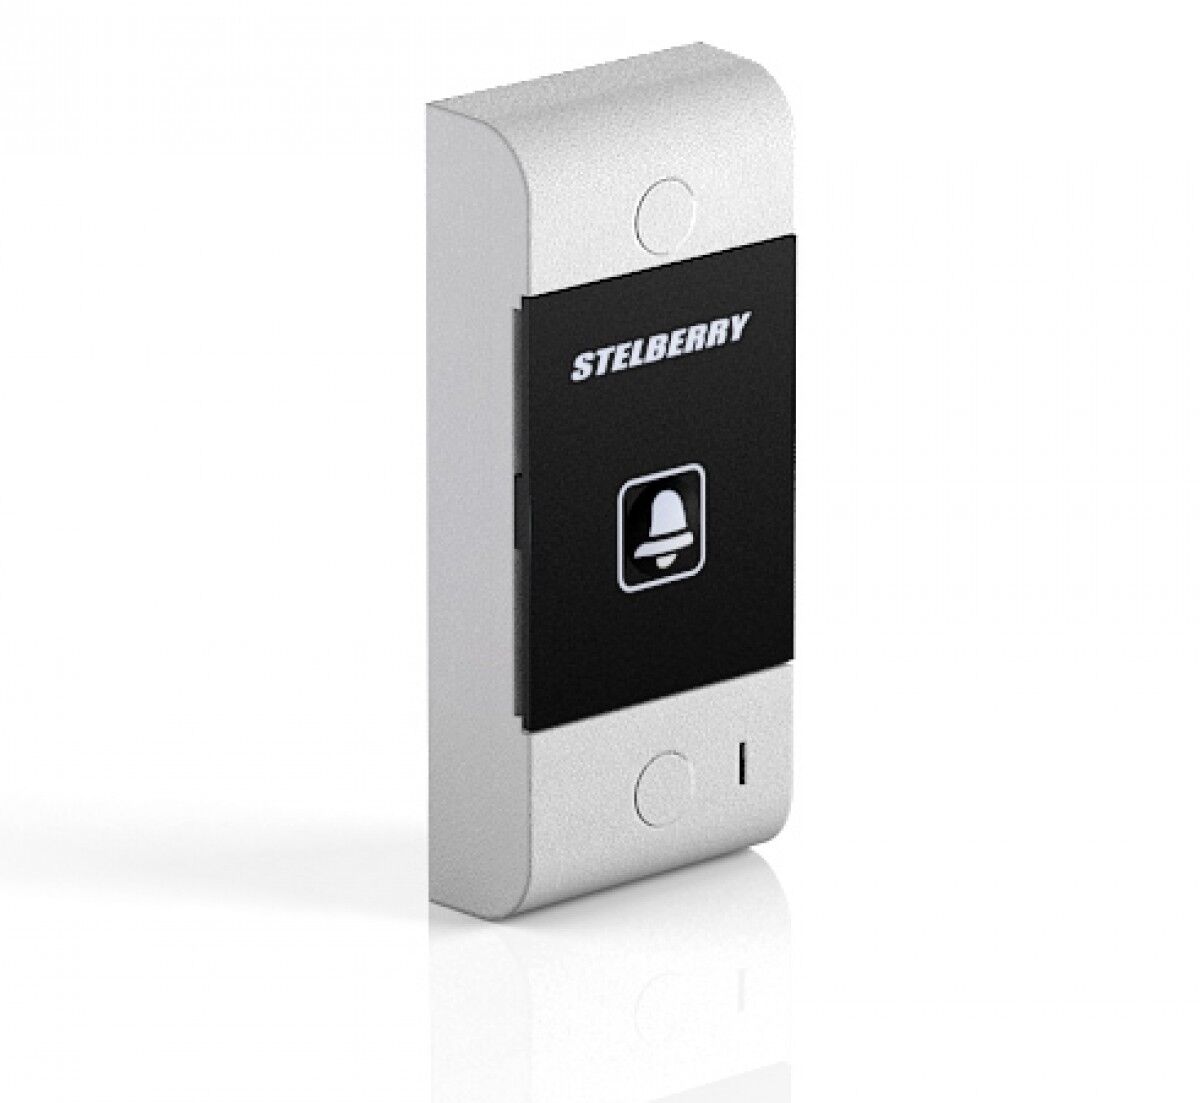 Переговорное устройство Stelberry s-130